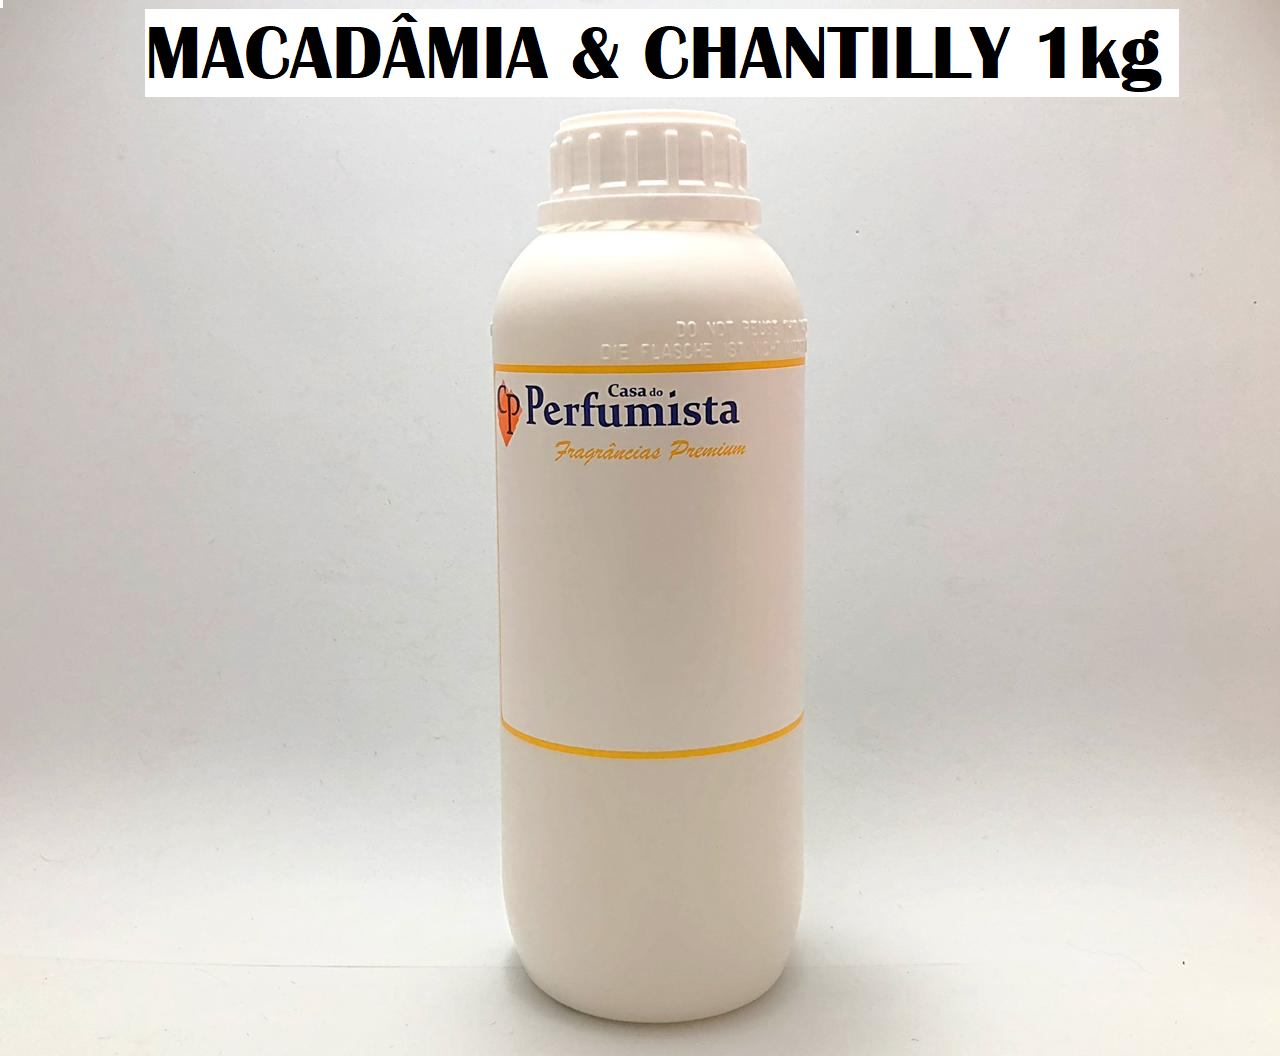 MACADÂMIA E CHANTILLY - 1kg